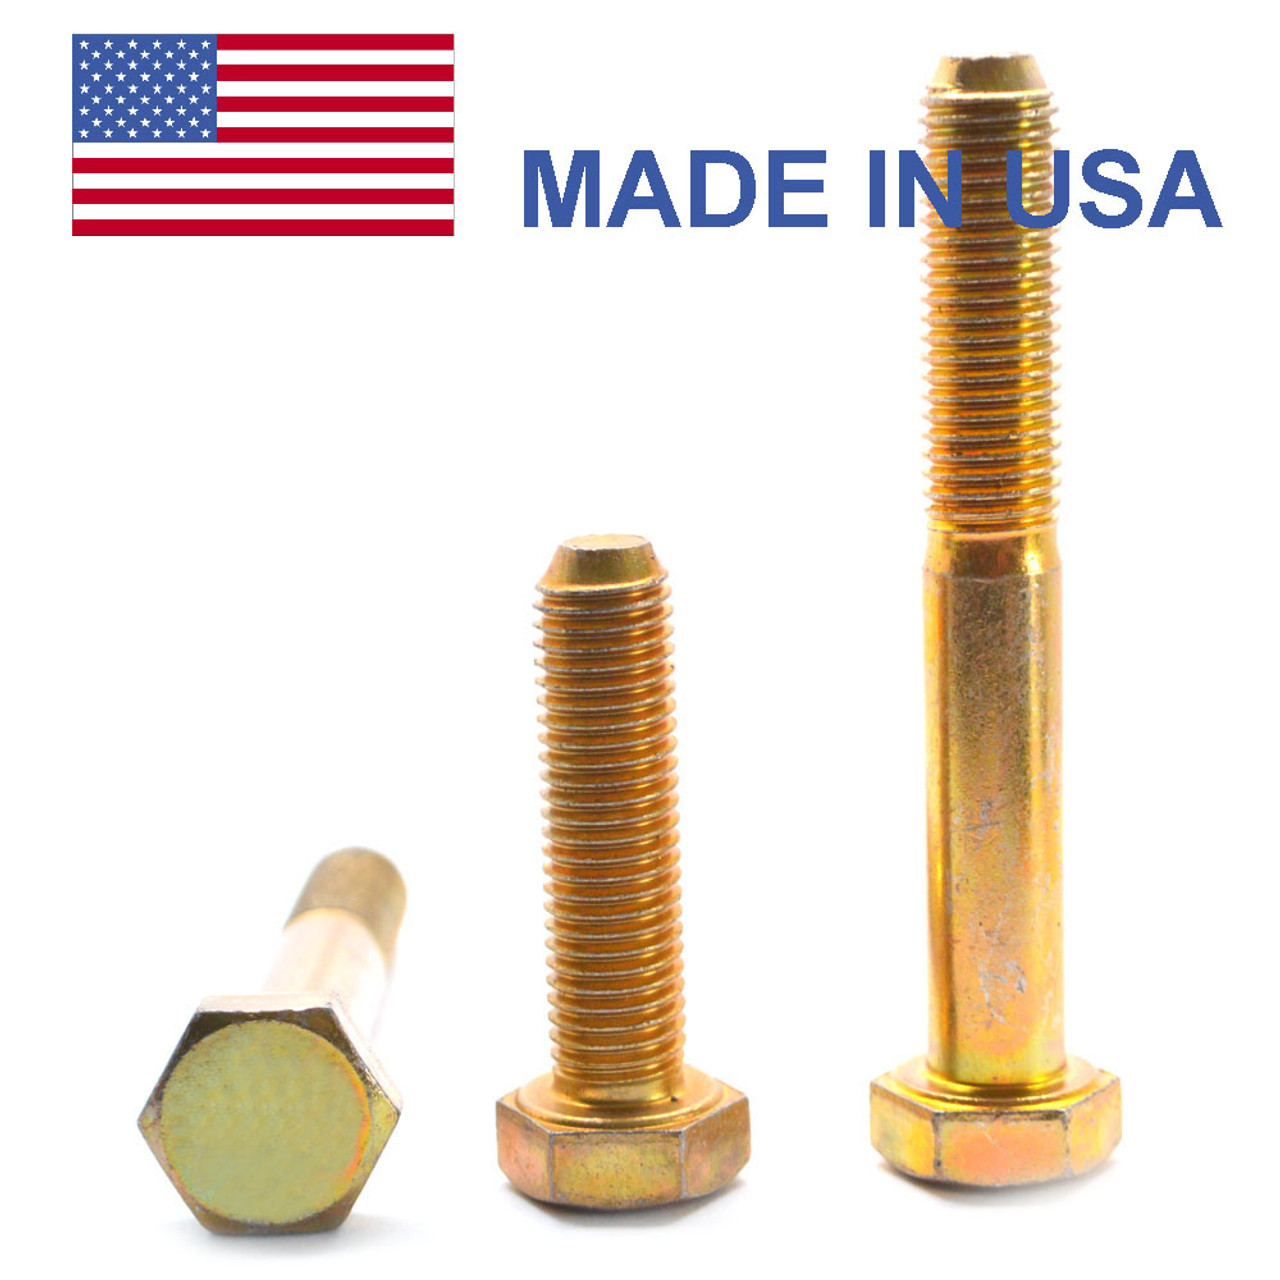 5/16"-24 x 2 1/4" (PT) Fine Thread Grade 8 Hex Cap Screw (Bolt) - USA Alloy Steel Yellow Zinc Plated